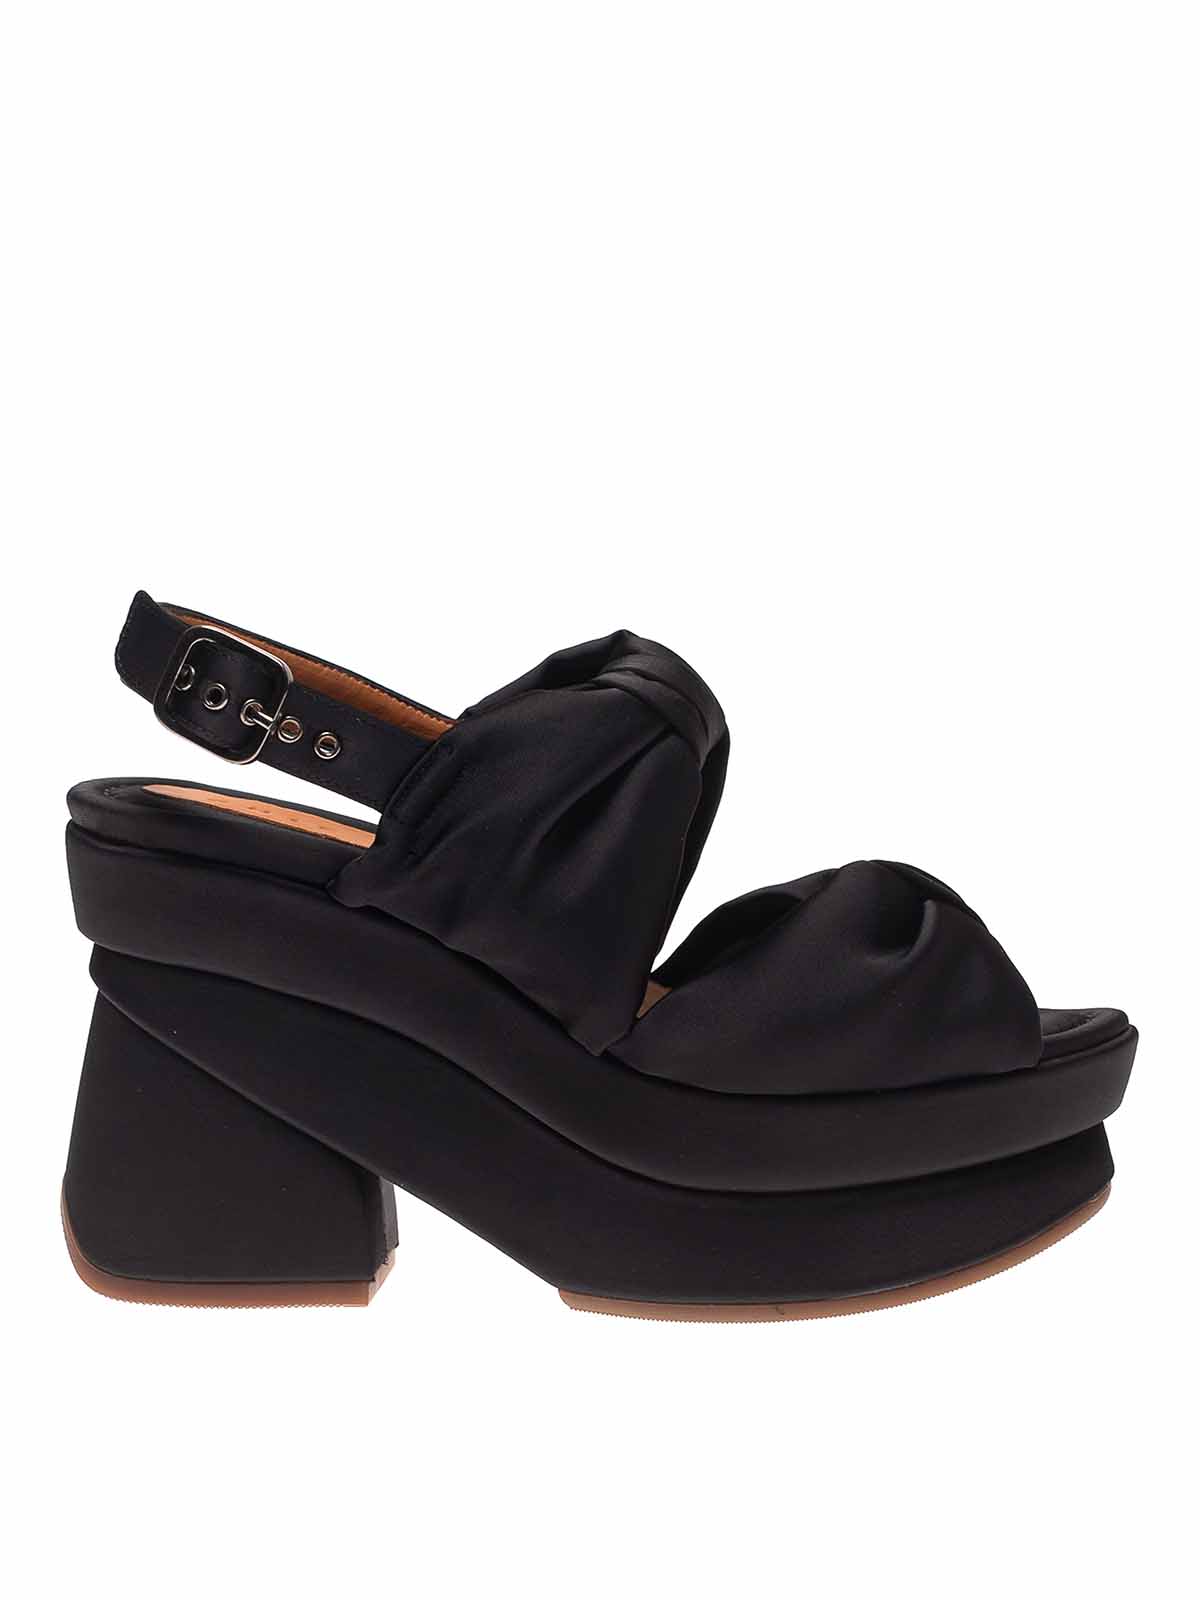 Sandals Chie Mihara - V-Vrap sandals - VVRAP36NERO | Shop online at iKRIX